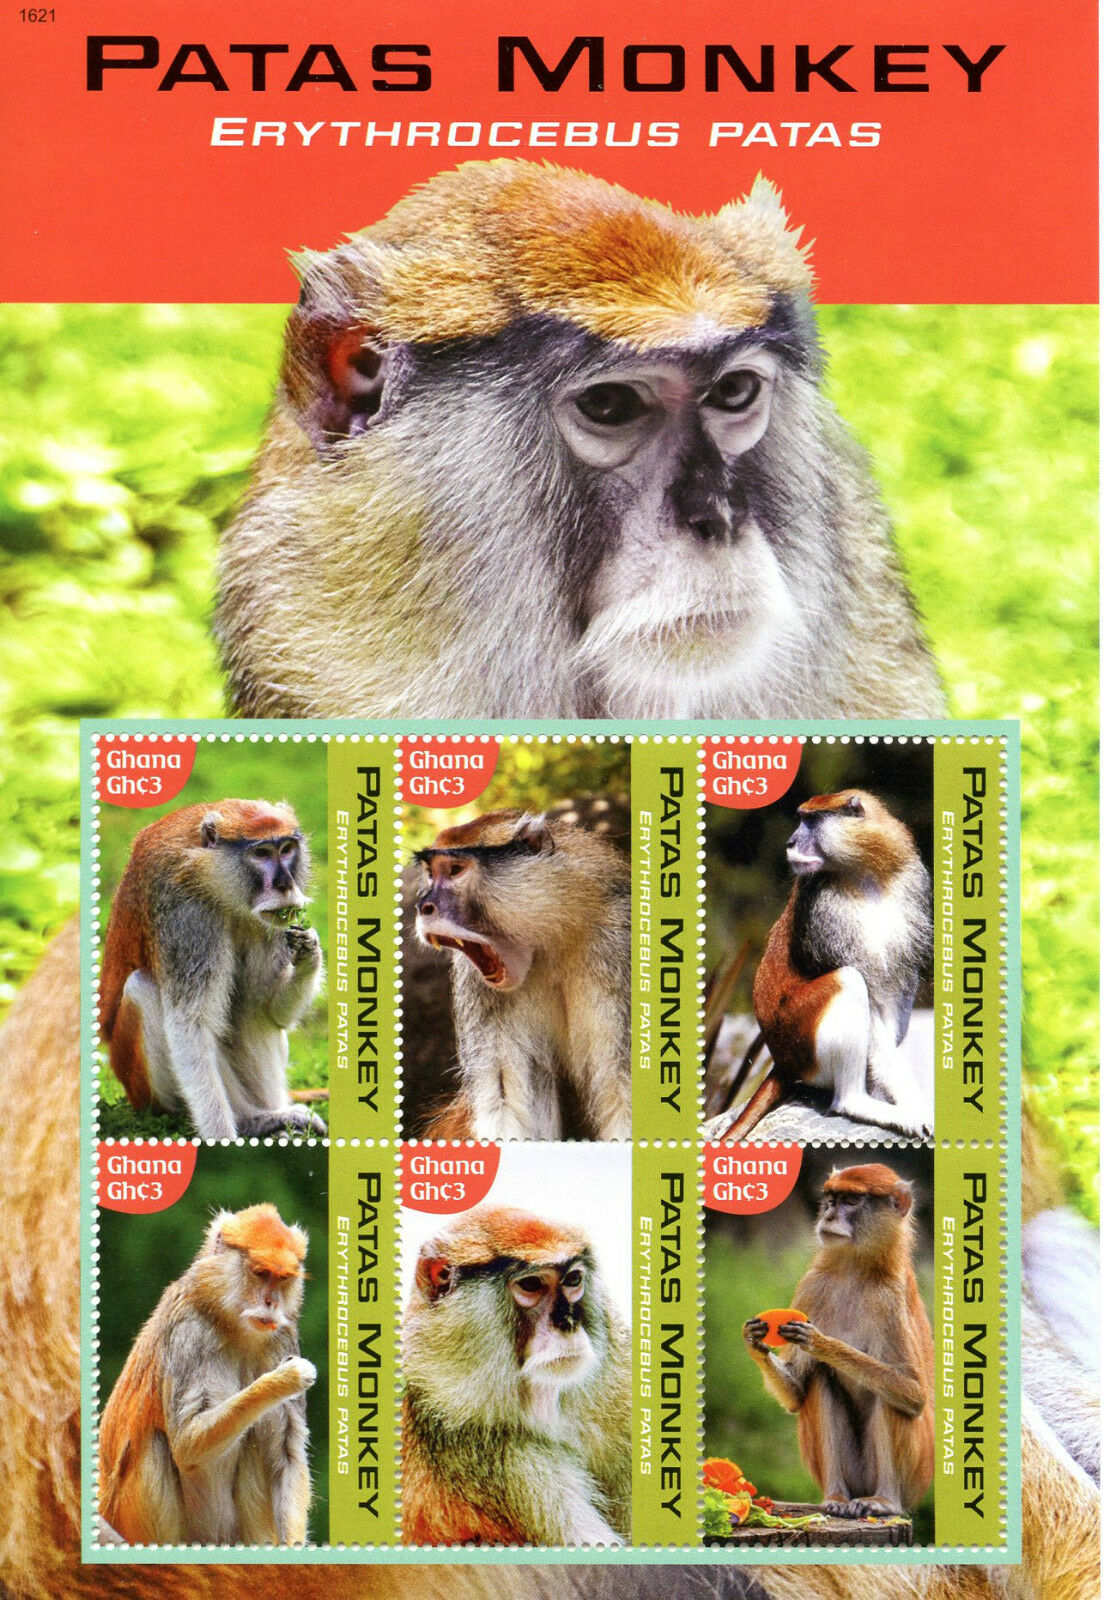 Ghana 2016 MNH Patas Monkey 6v M/S Monkeys Primates Wild Animals Stamps